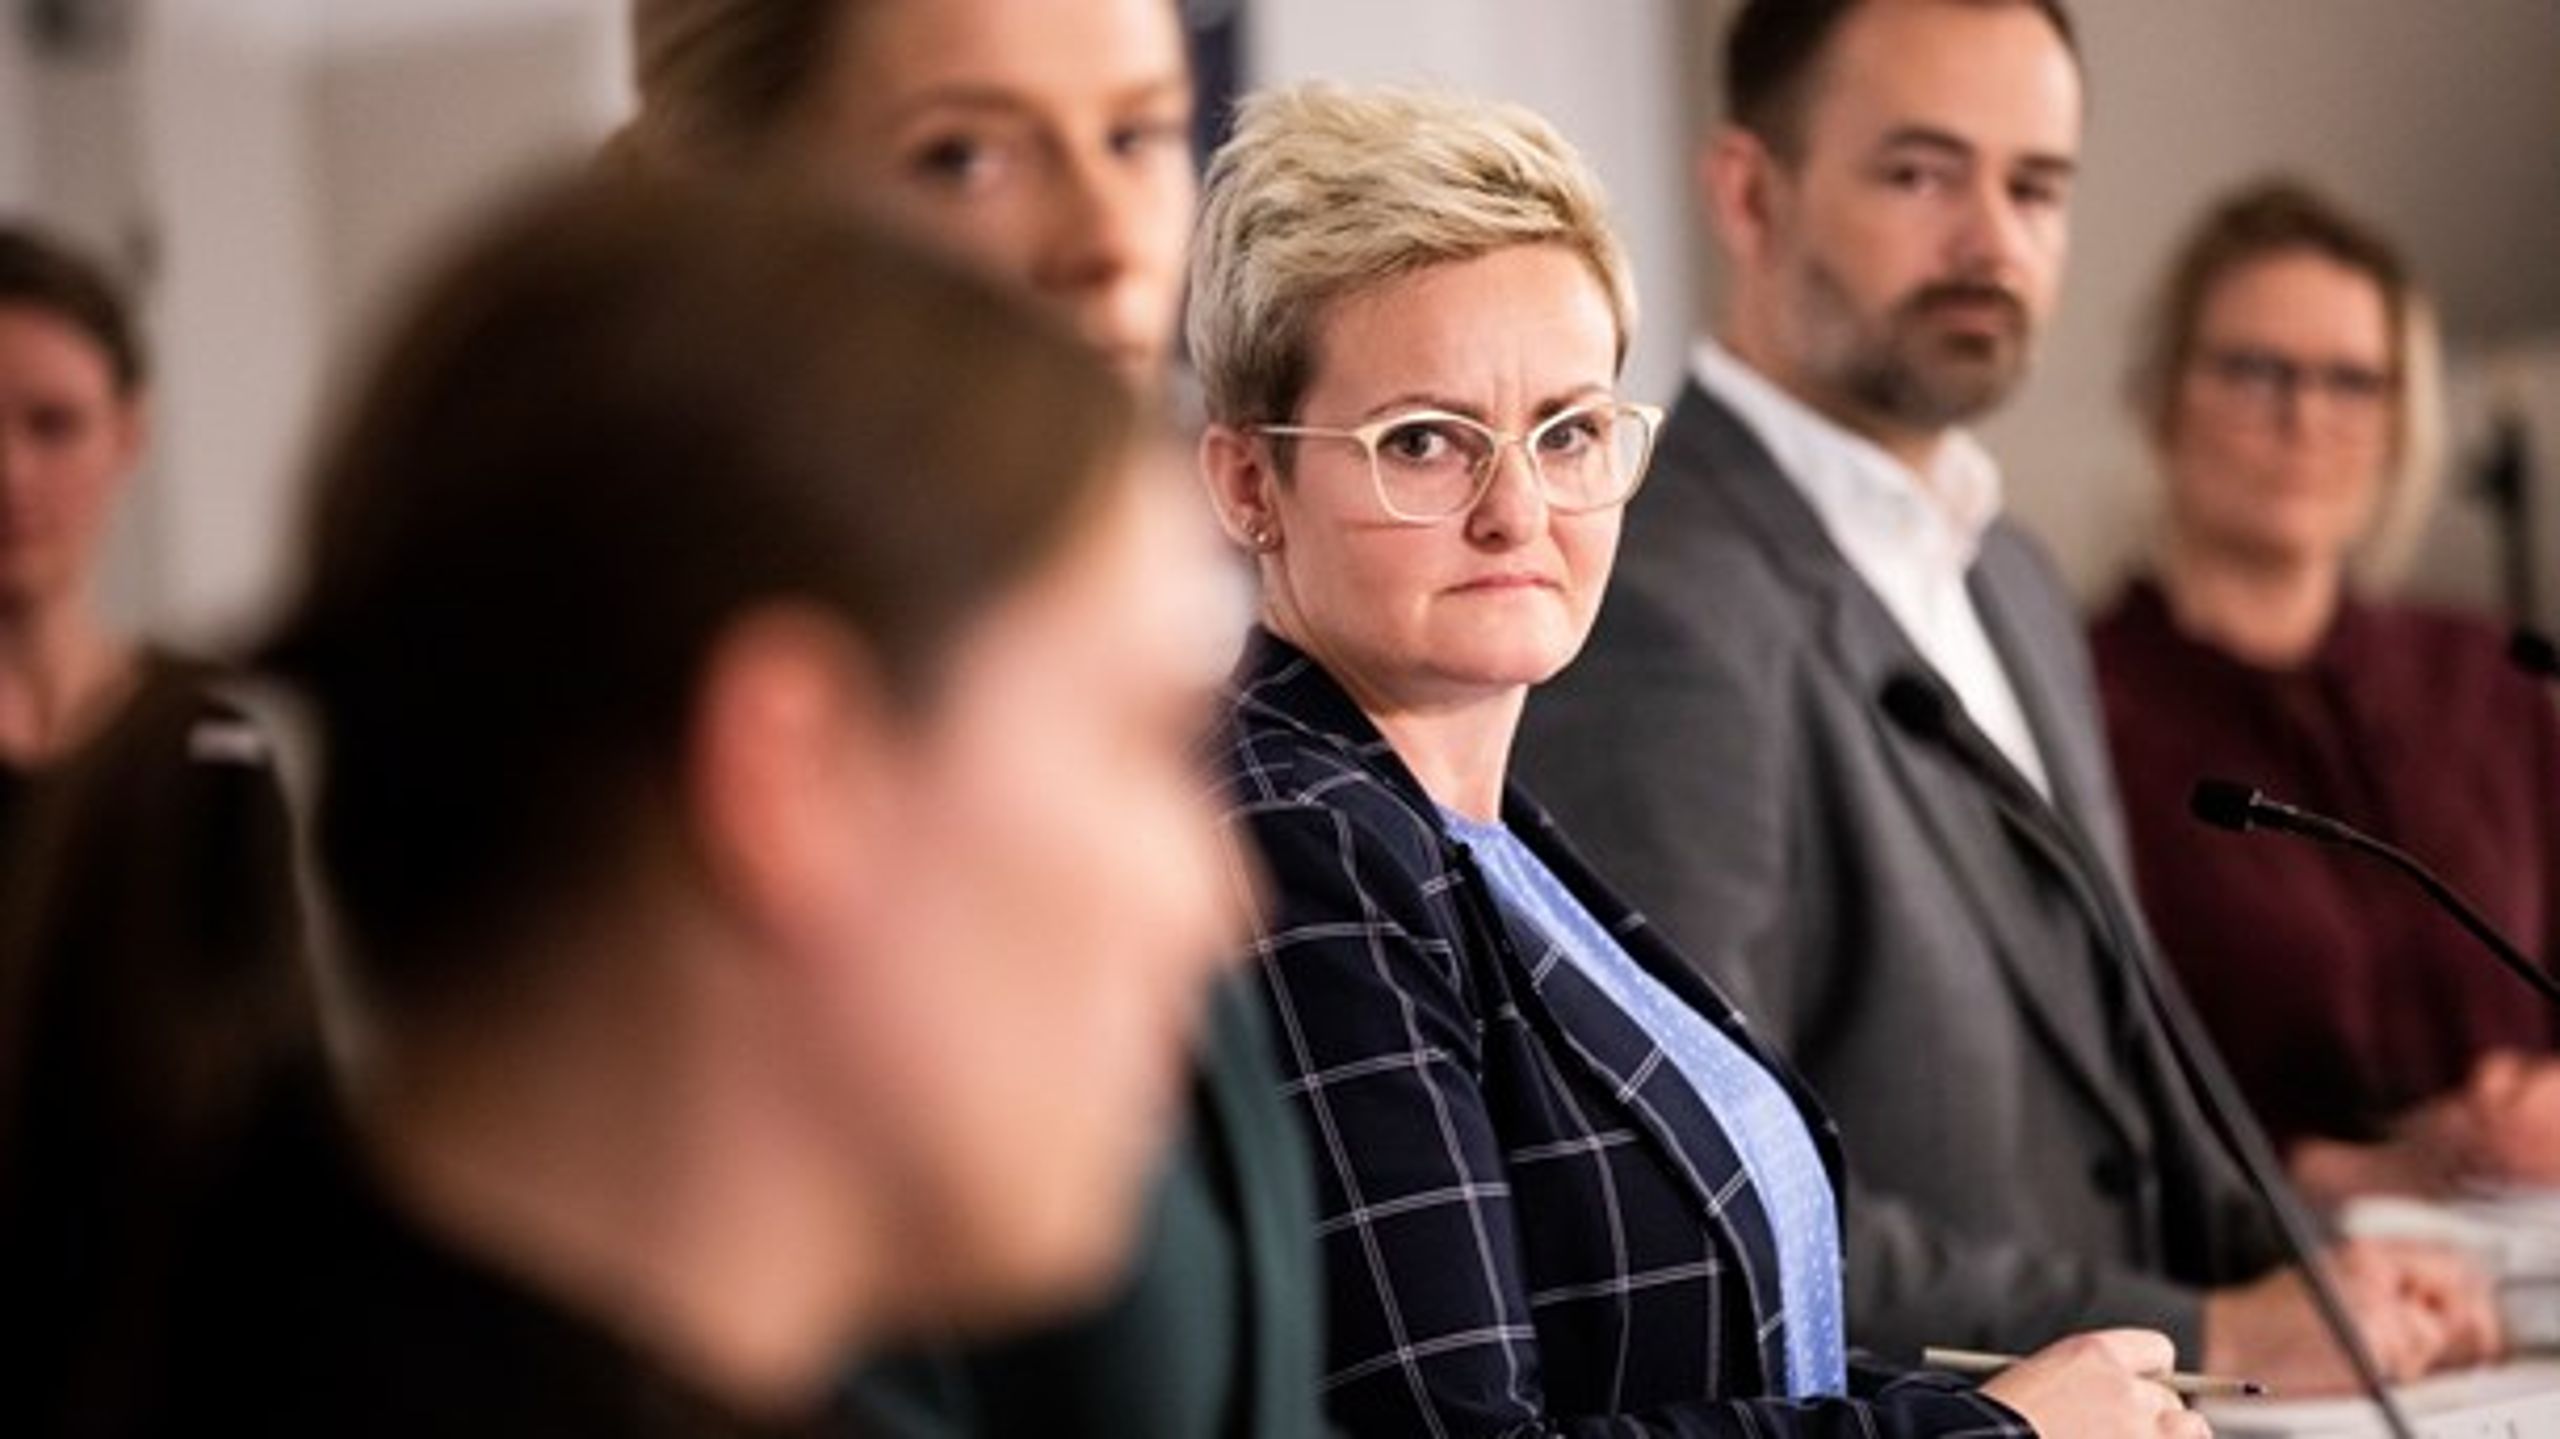 Børne- og undervisningsminister Pernille Rosenkrantz-Theil (S) under torsdagens pressemøde.